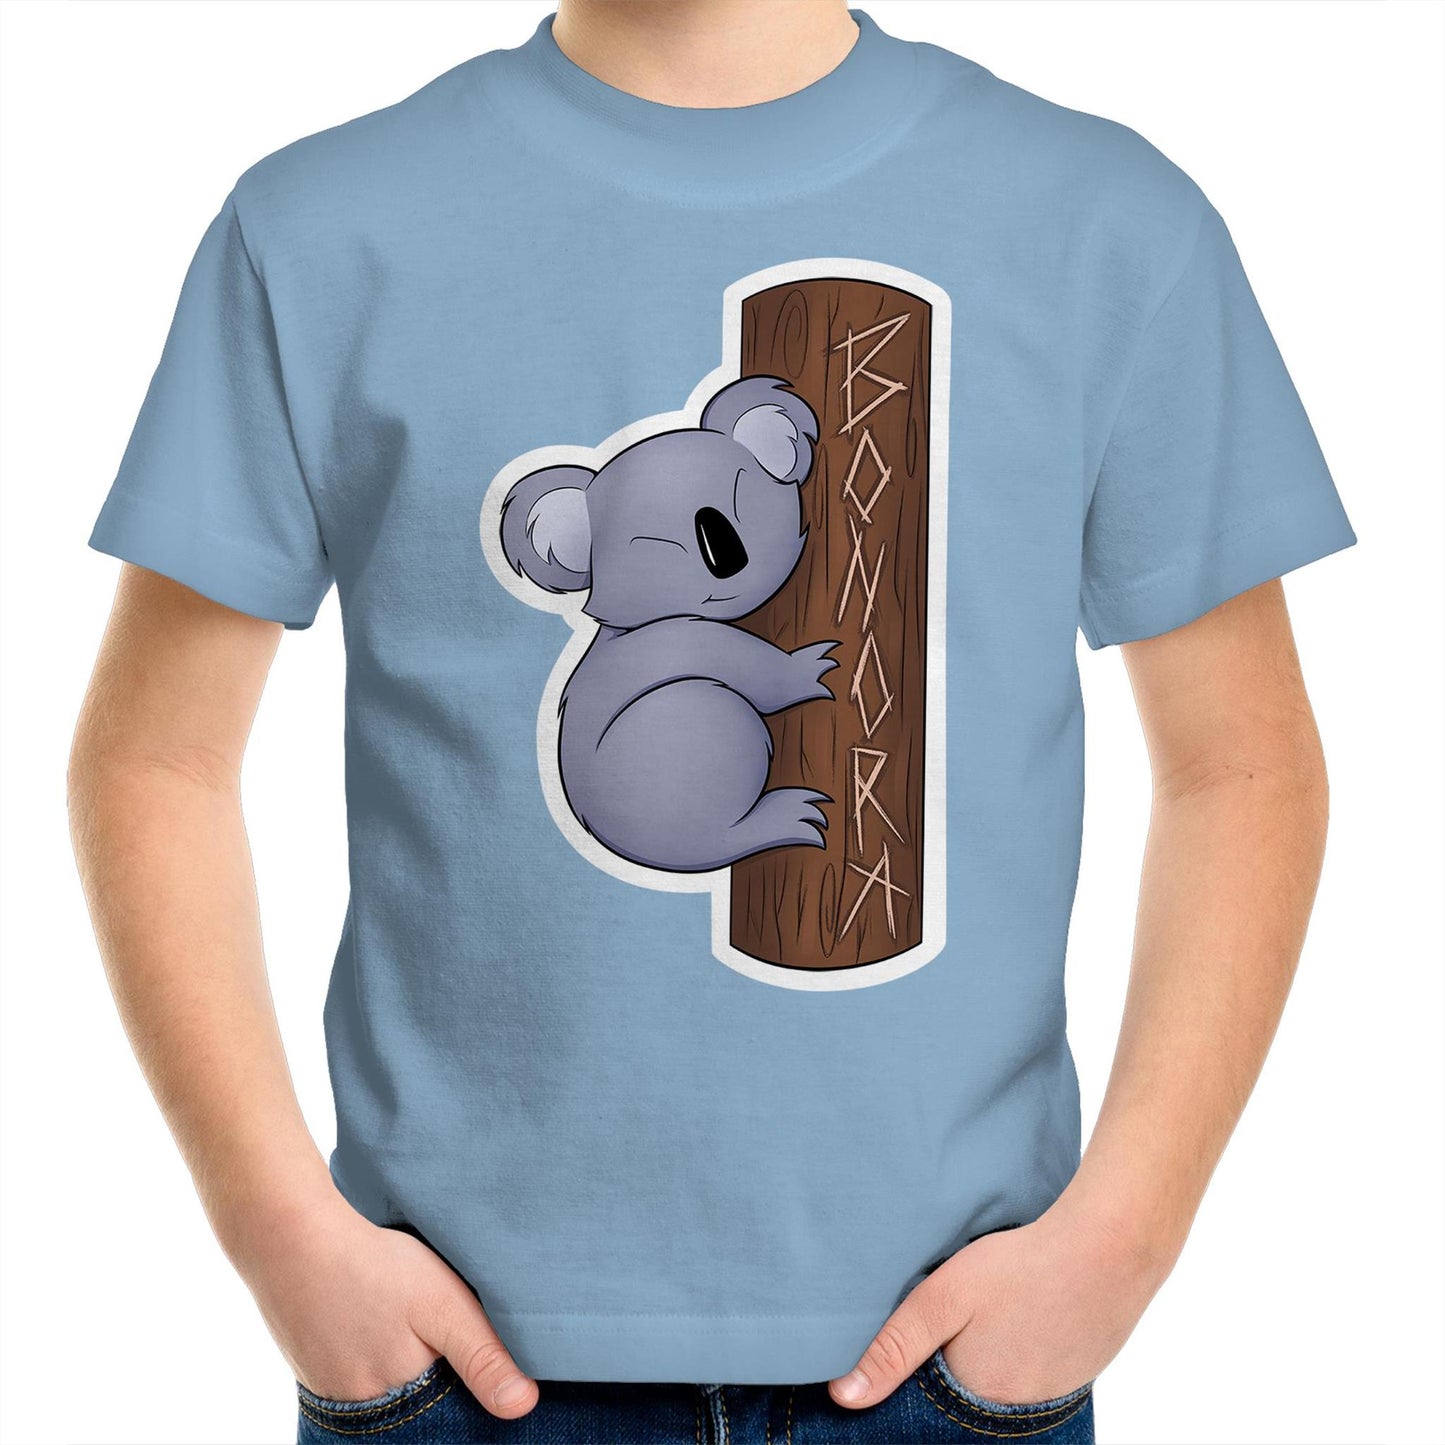 Kai the Koala Kids T-Shirt